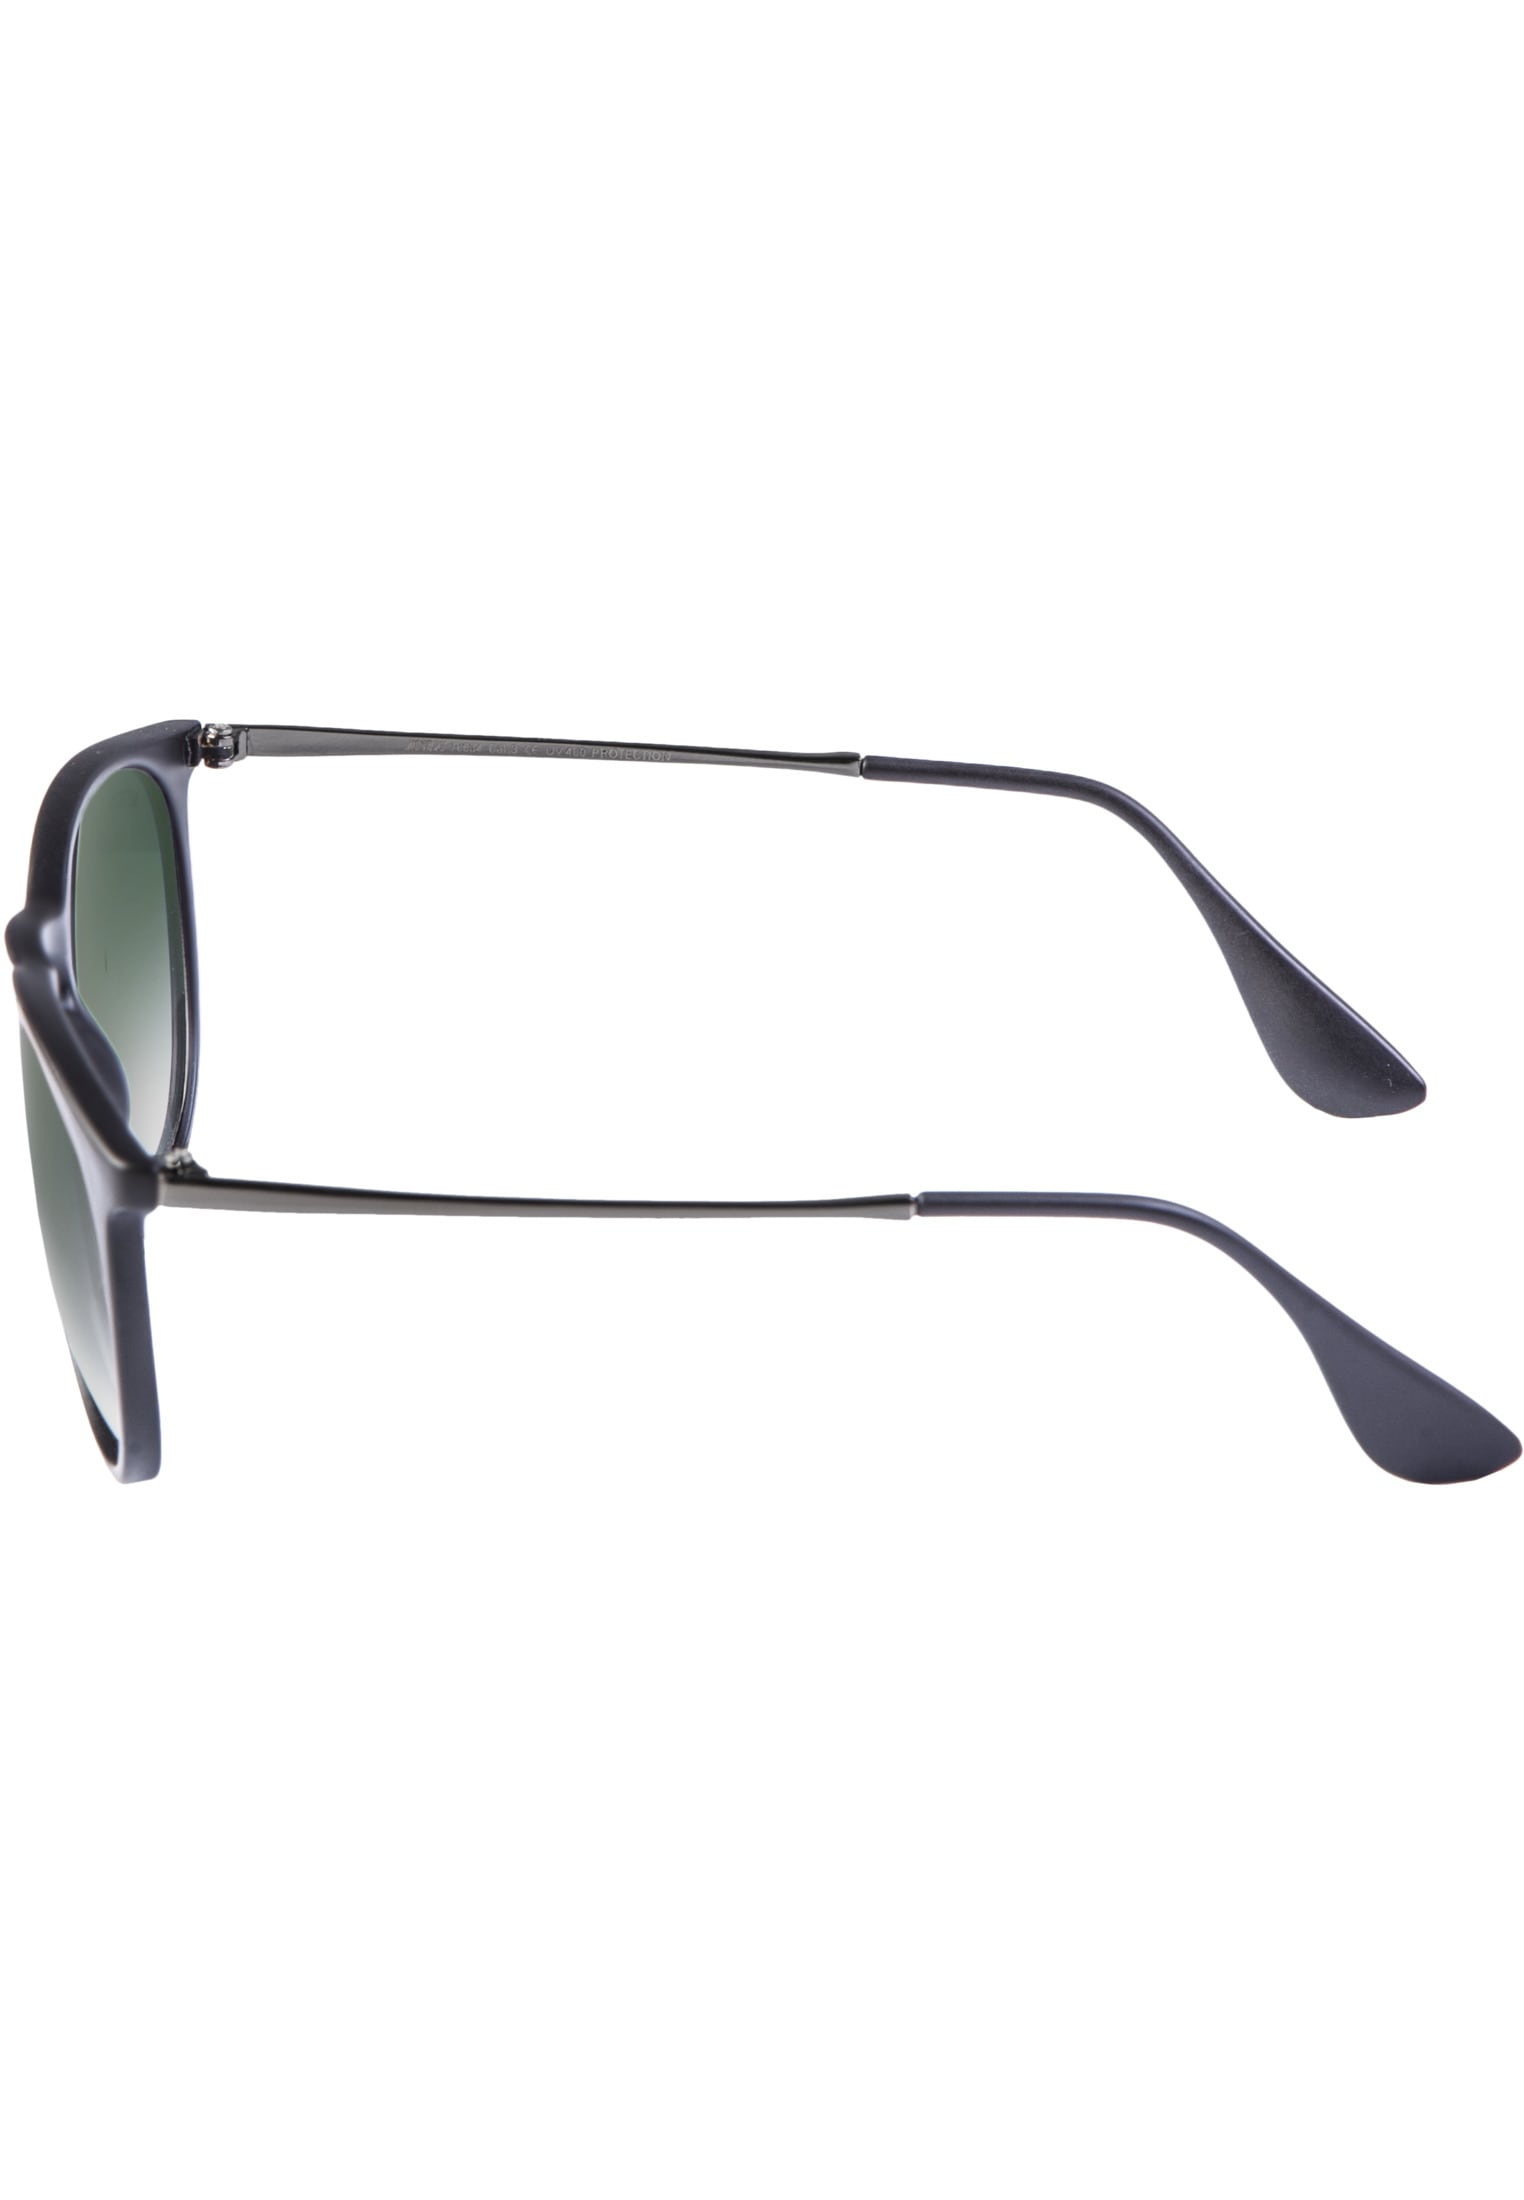 MSTRDS Sonnenbrille »Accessoires Sunglasses Jesica« kaufen | BAUR